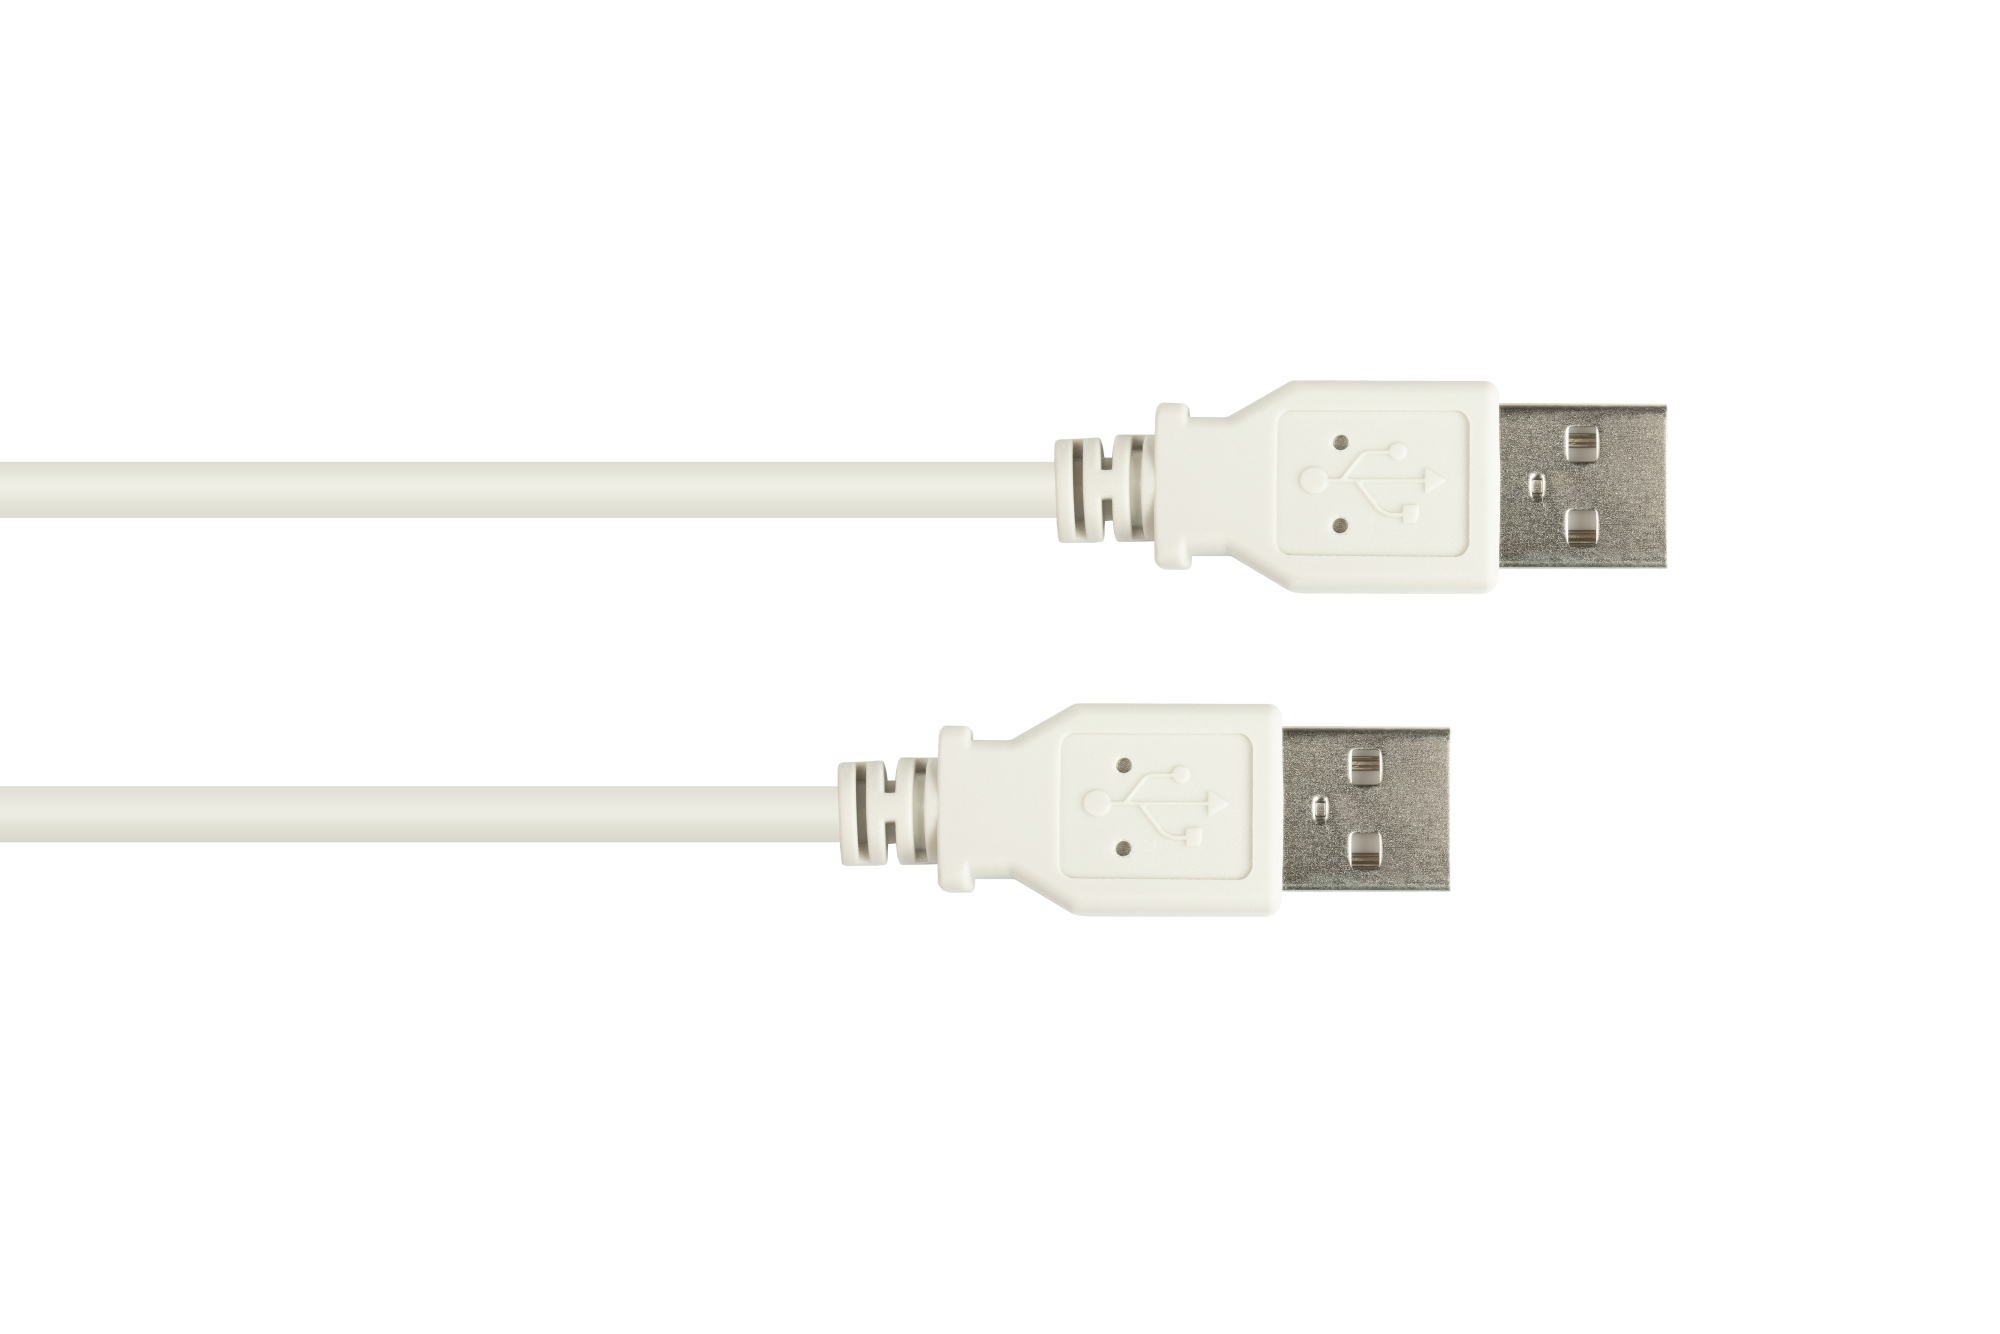 Anschlusskabel USB 2.0 Stecker A an Stecker A, grau, 5m, Good Connections®